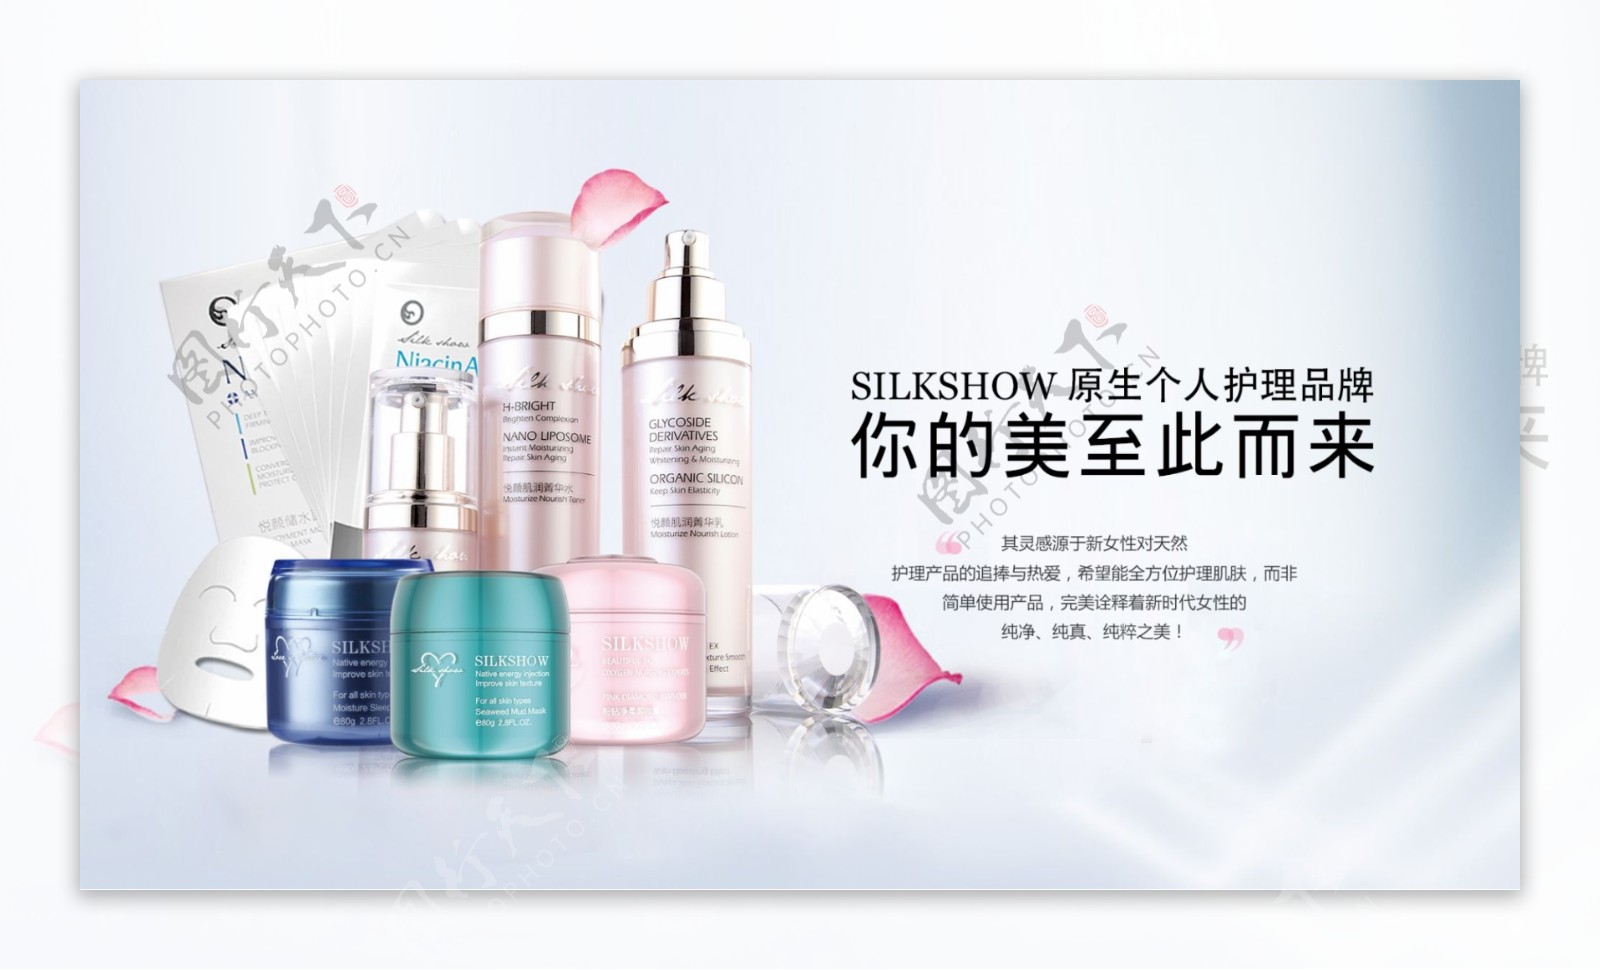 化妆品护肤品系列产品宣传海报